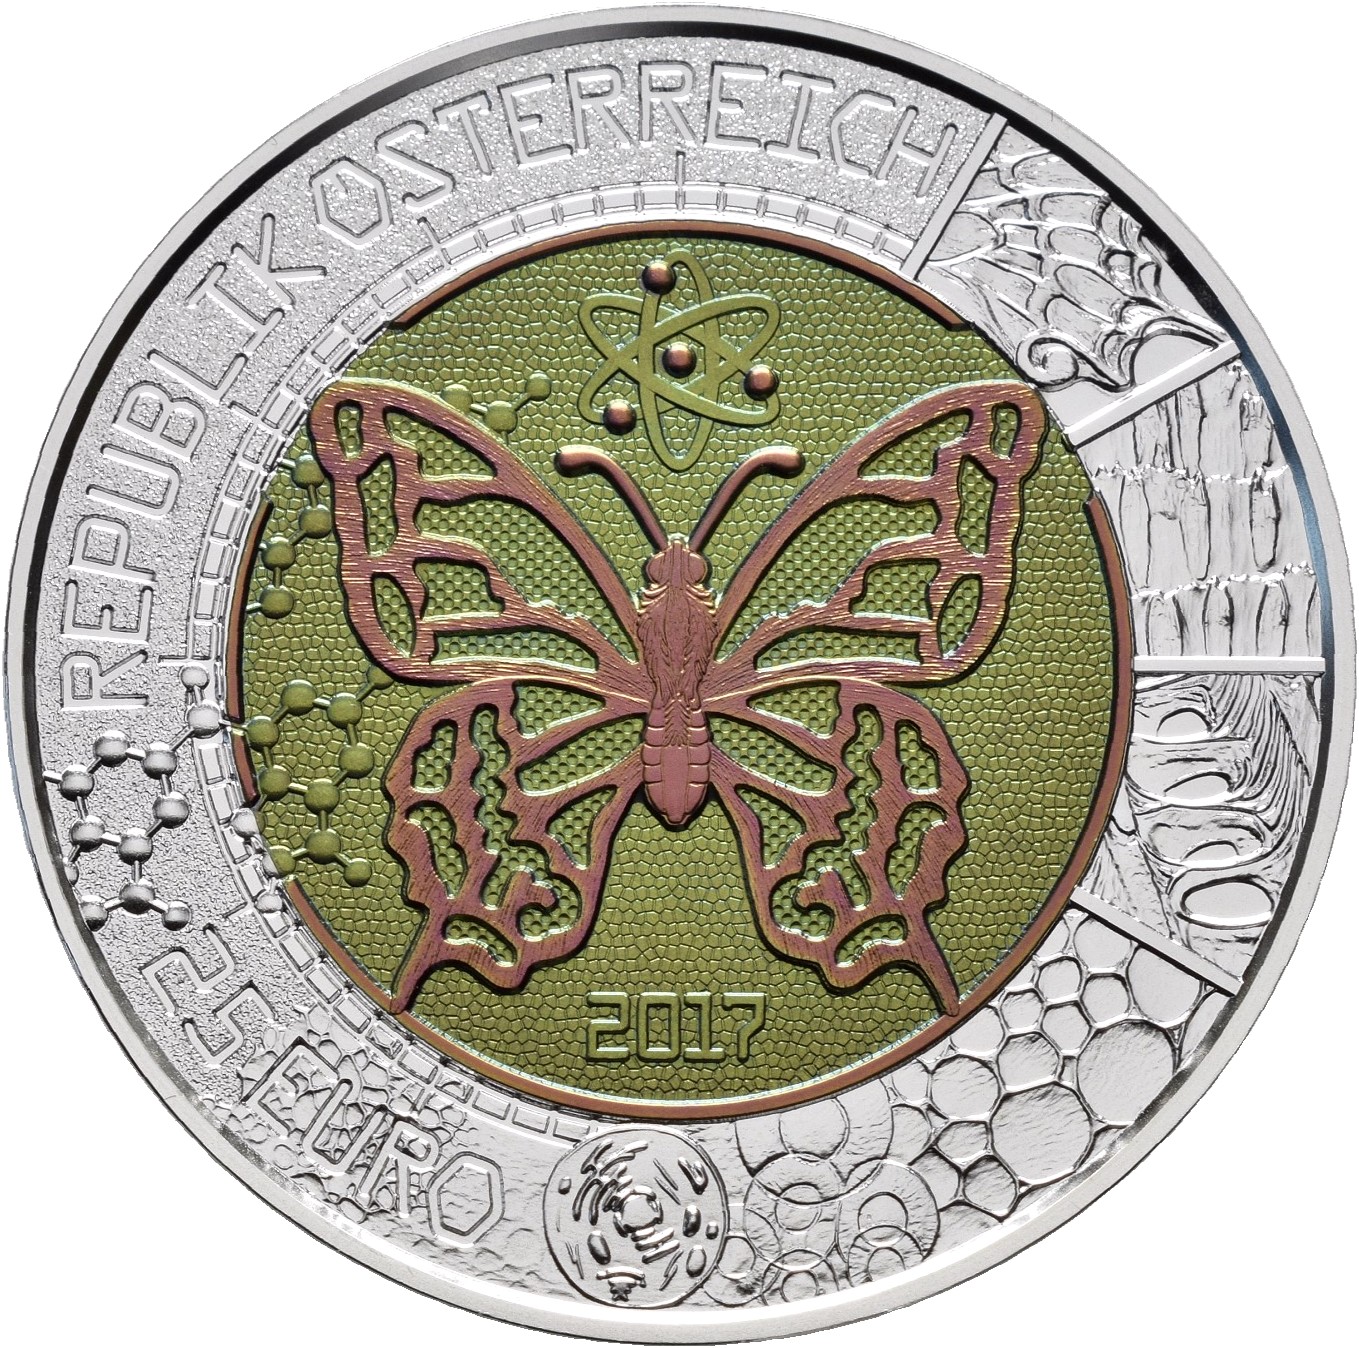 Lot 04083 - Österreich | Euromünzen  -  Auktionshaus Christoph Gärtner GmbH & Co. KG Sale #43 Coins, Day 2